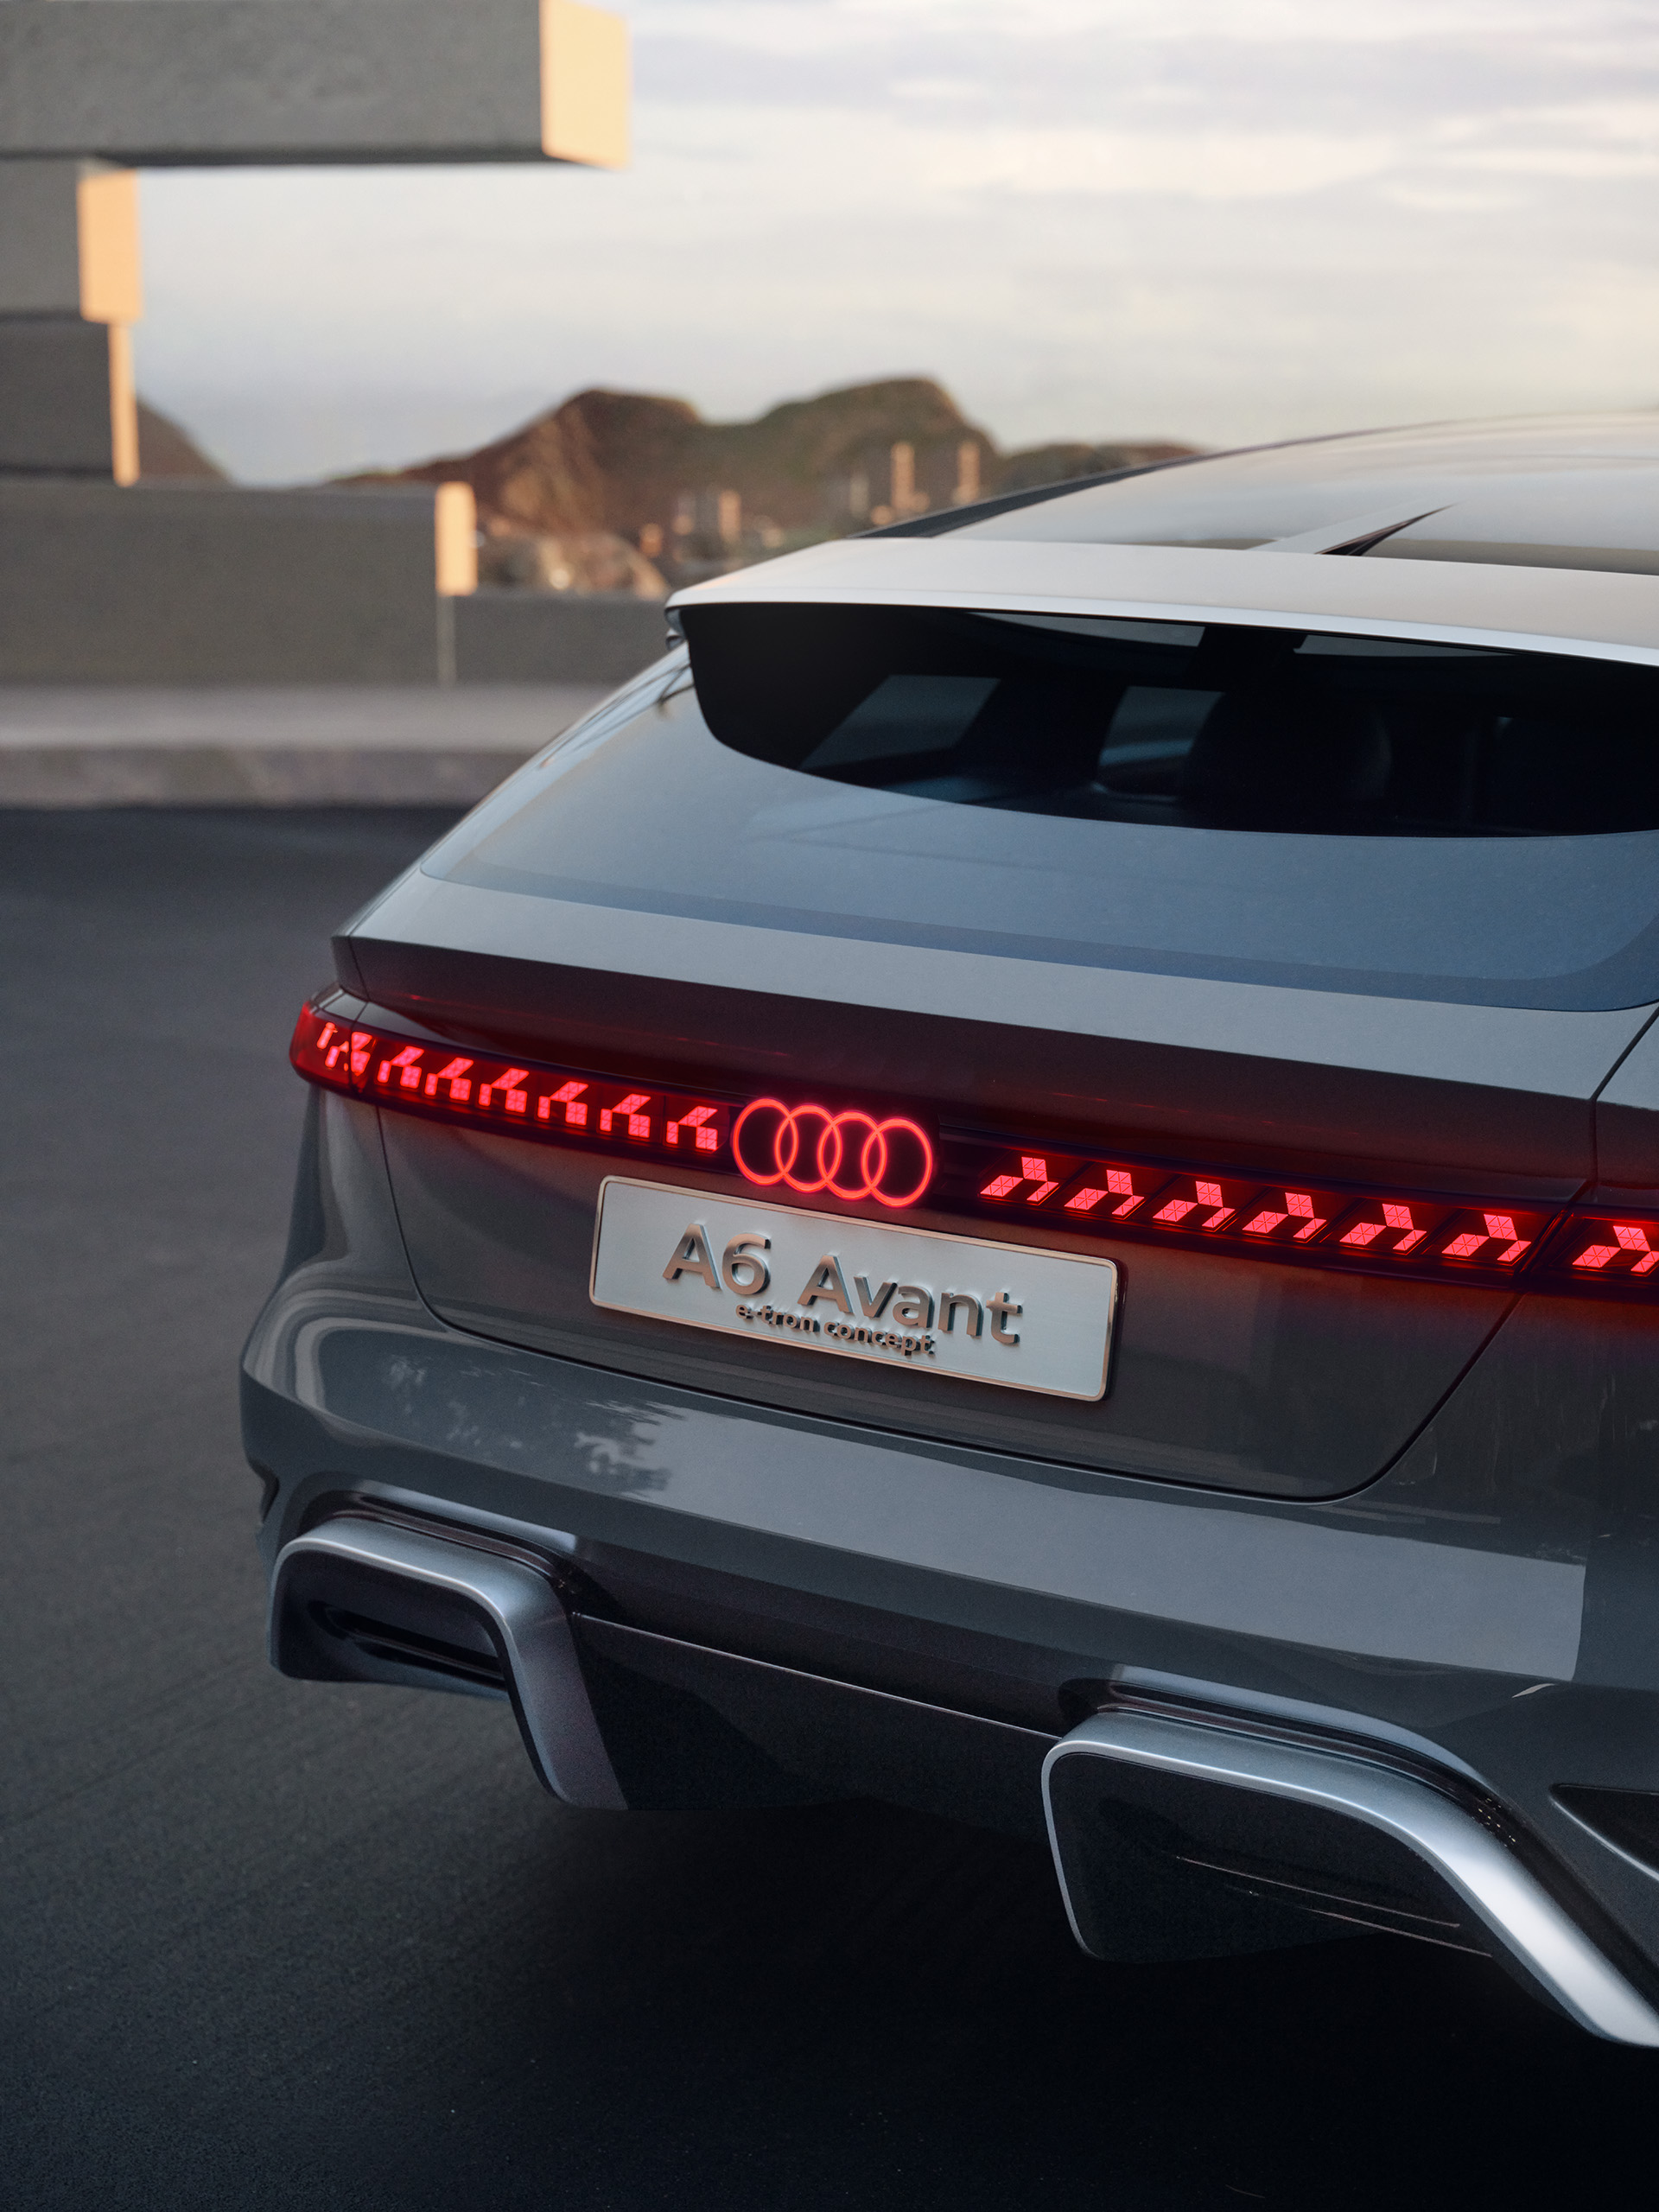 Heckansicht des Audi A6 Avant e-tron concept mit durchgezogenem Leuchtenband.